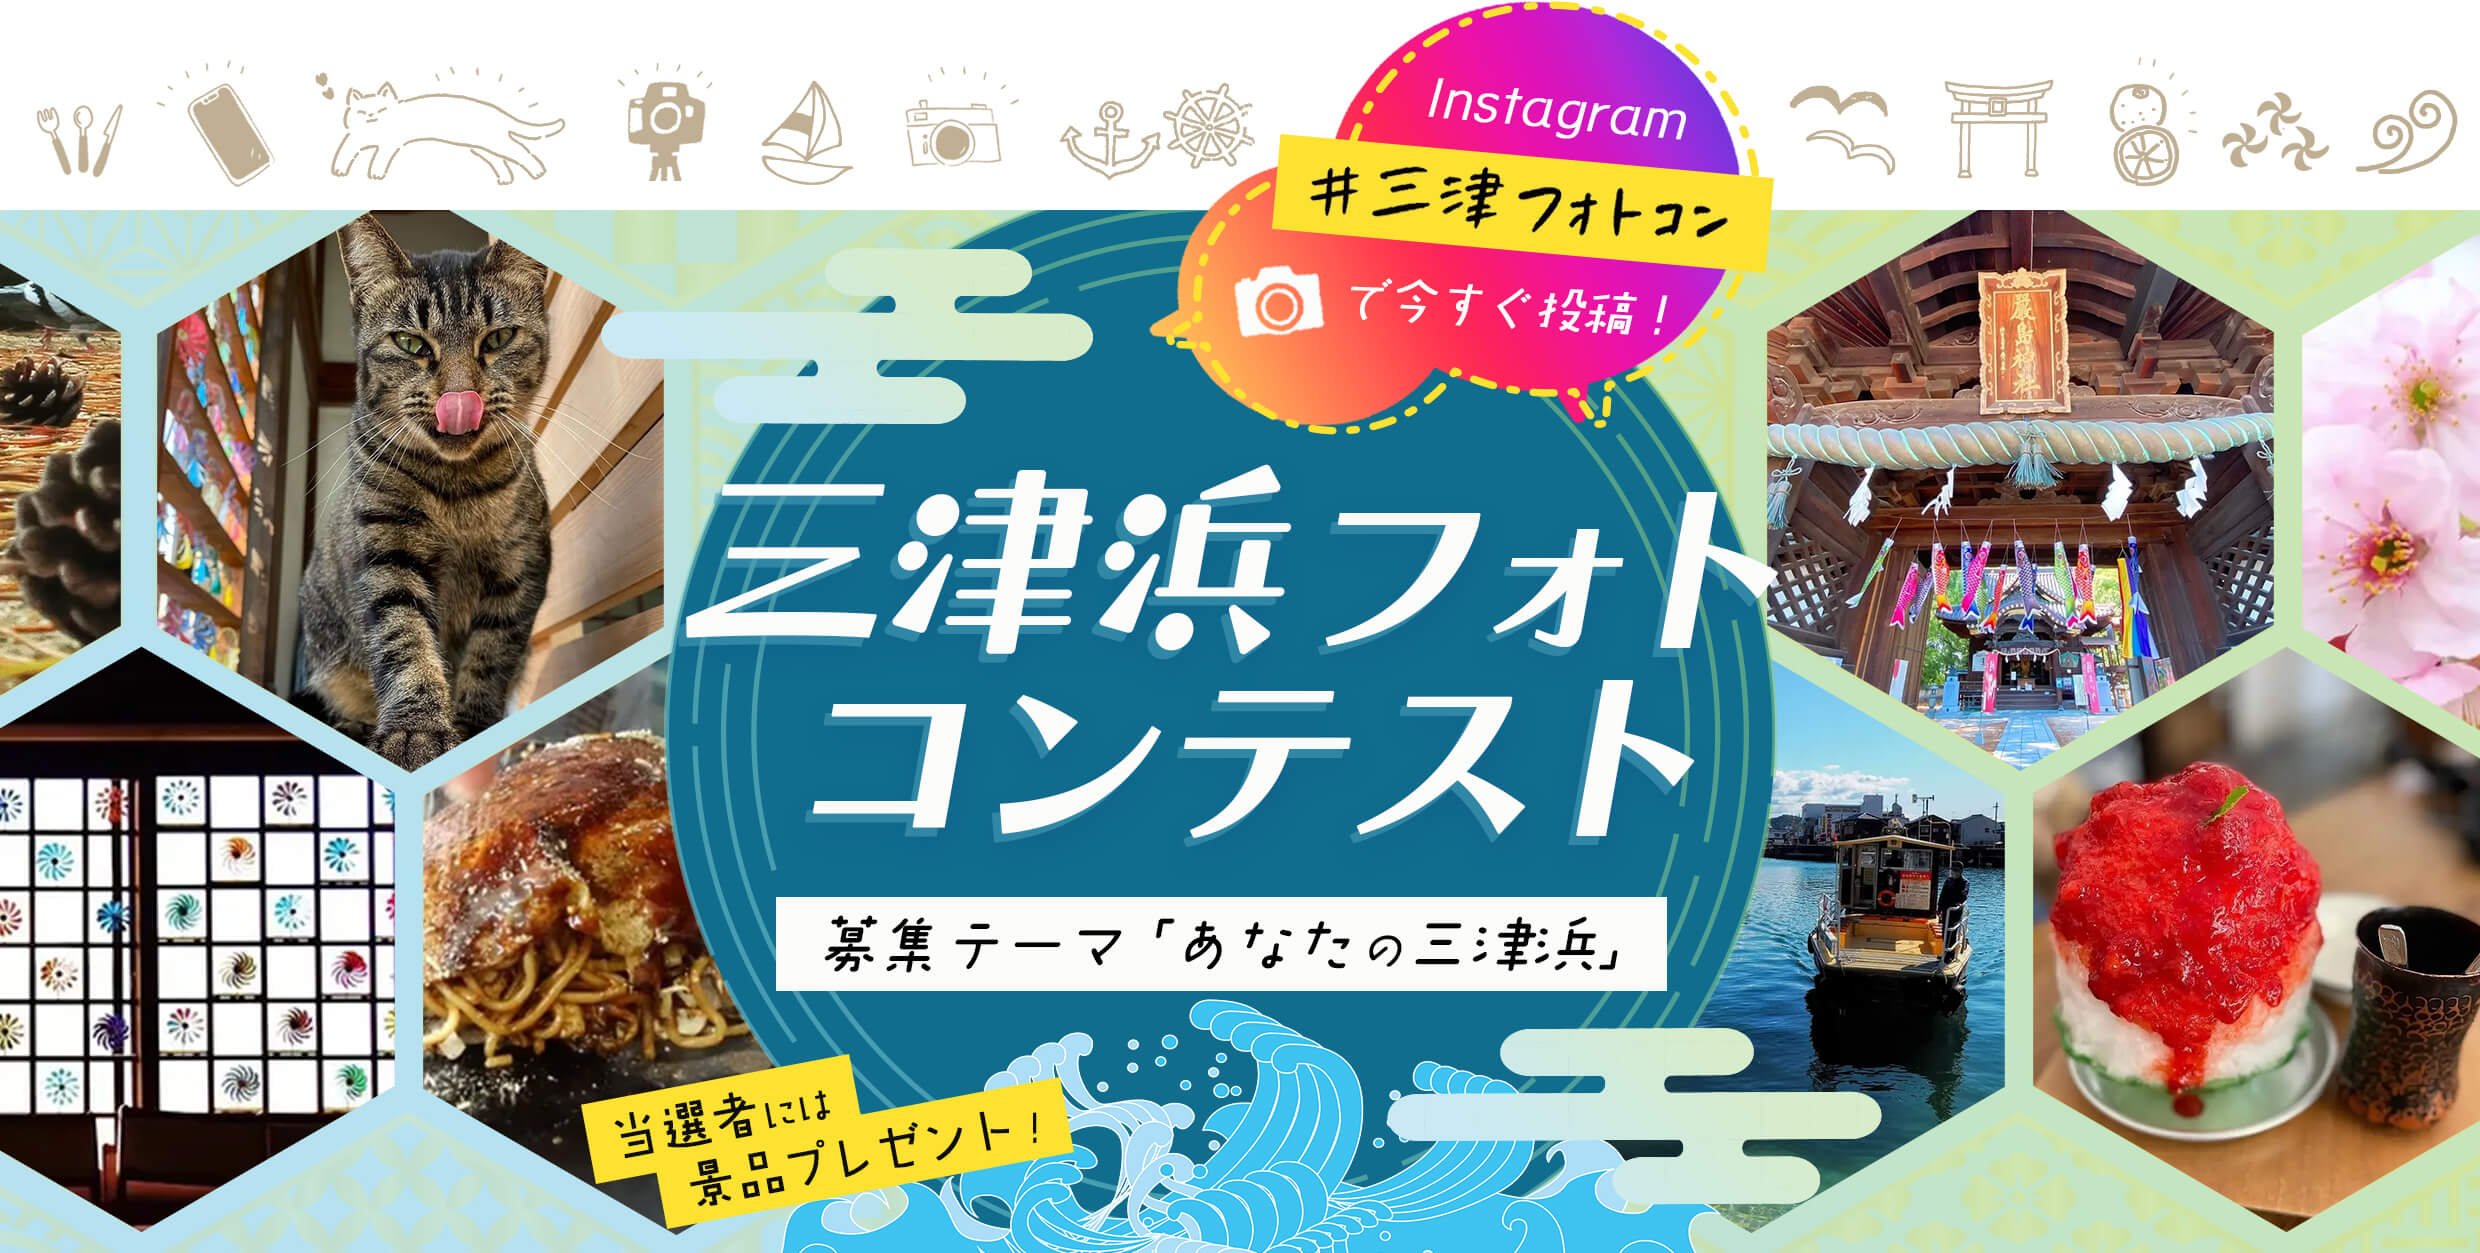 instagram #三津フォトコン で今すぐ検索！ 募集テーマは「あなたの三津浜」抽選で2ヶ月毎に景品プレゼント！